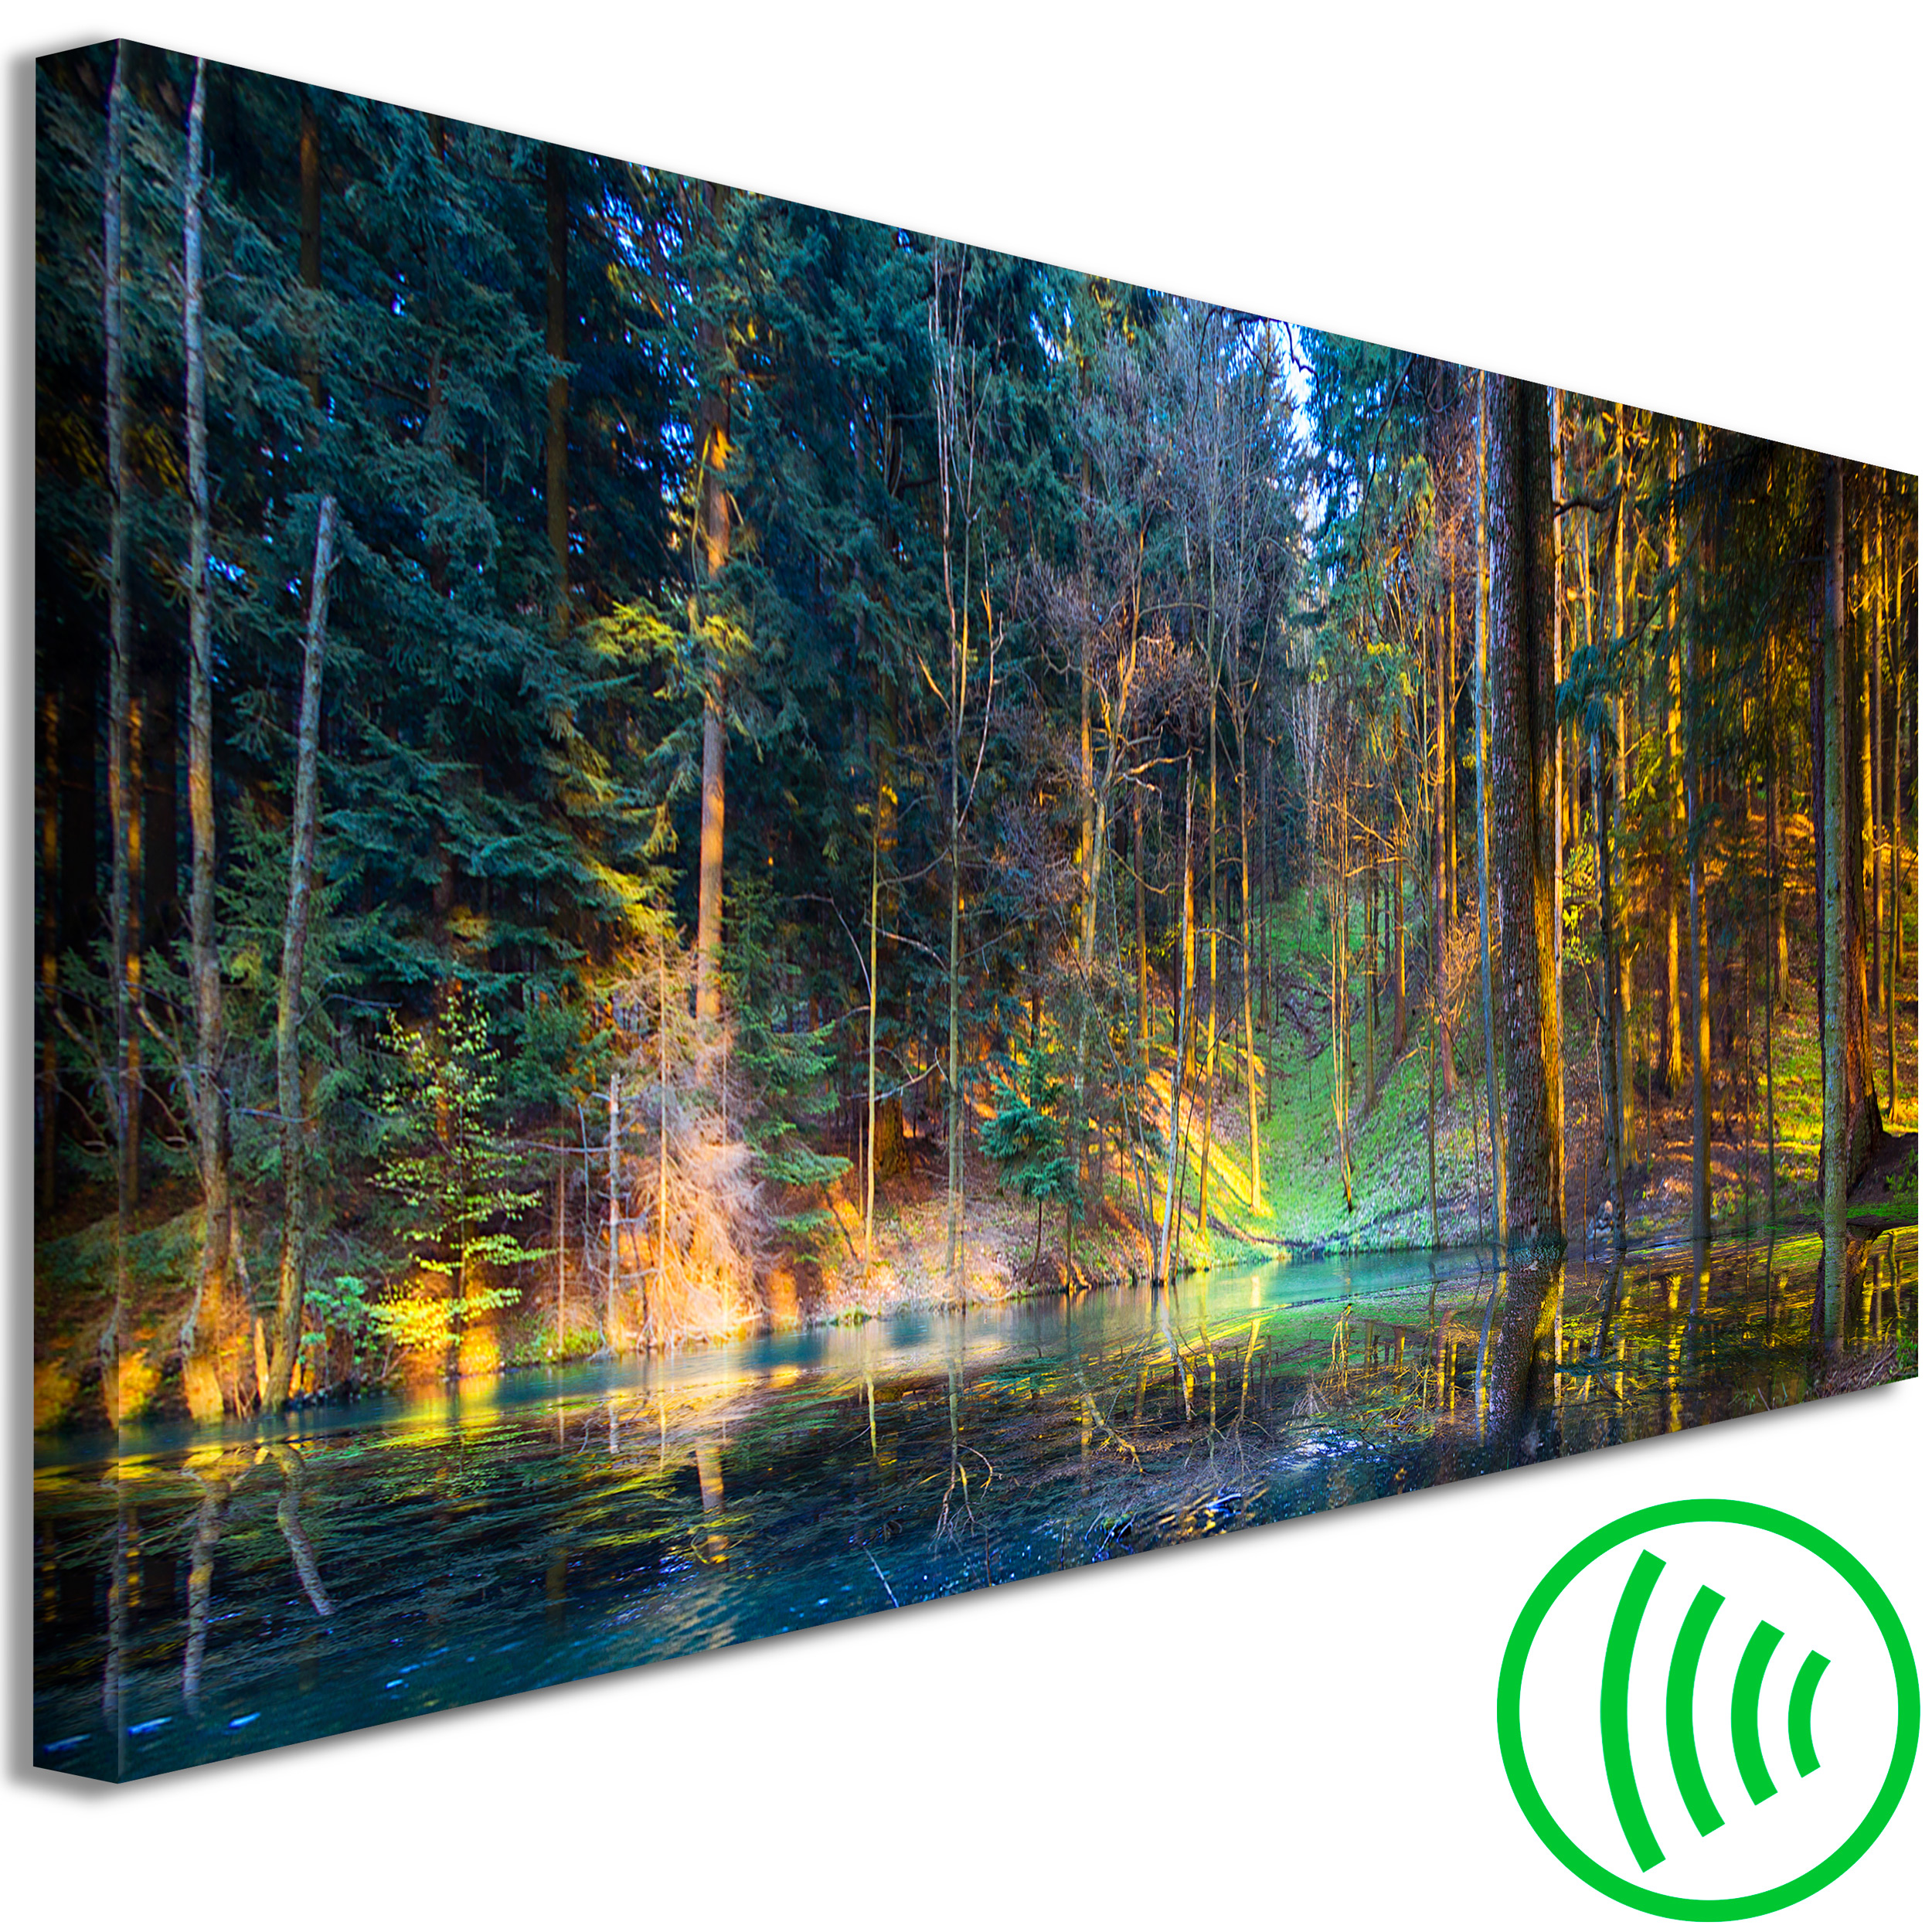 Wandbilder XXL Groß Bilder Wald Kunstdruck Bild Leinwand Selbstmontage 160x80 